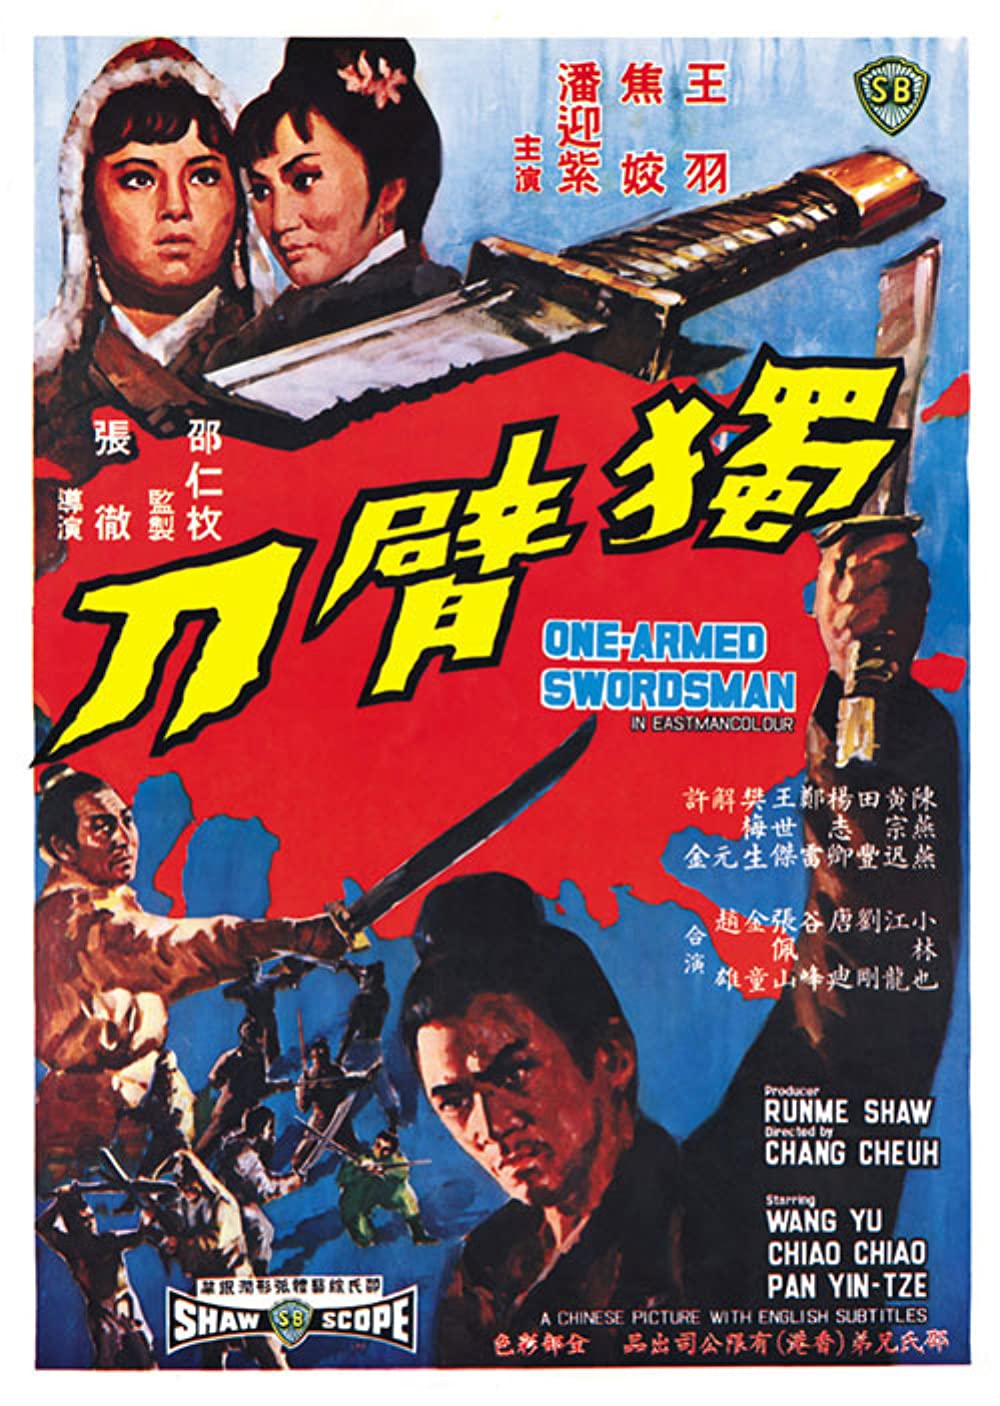 مشاهدة فيلم The One-Armed Swordsman (1967) مترجم